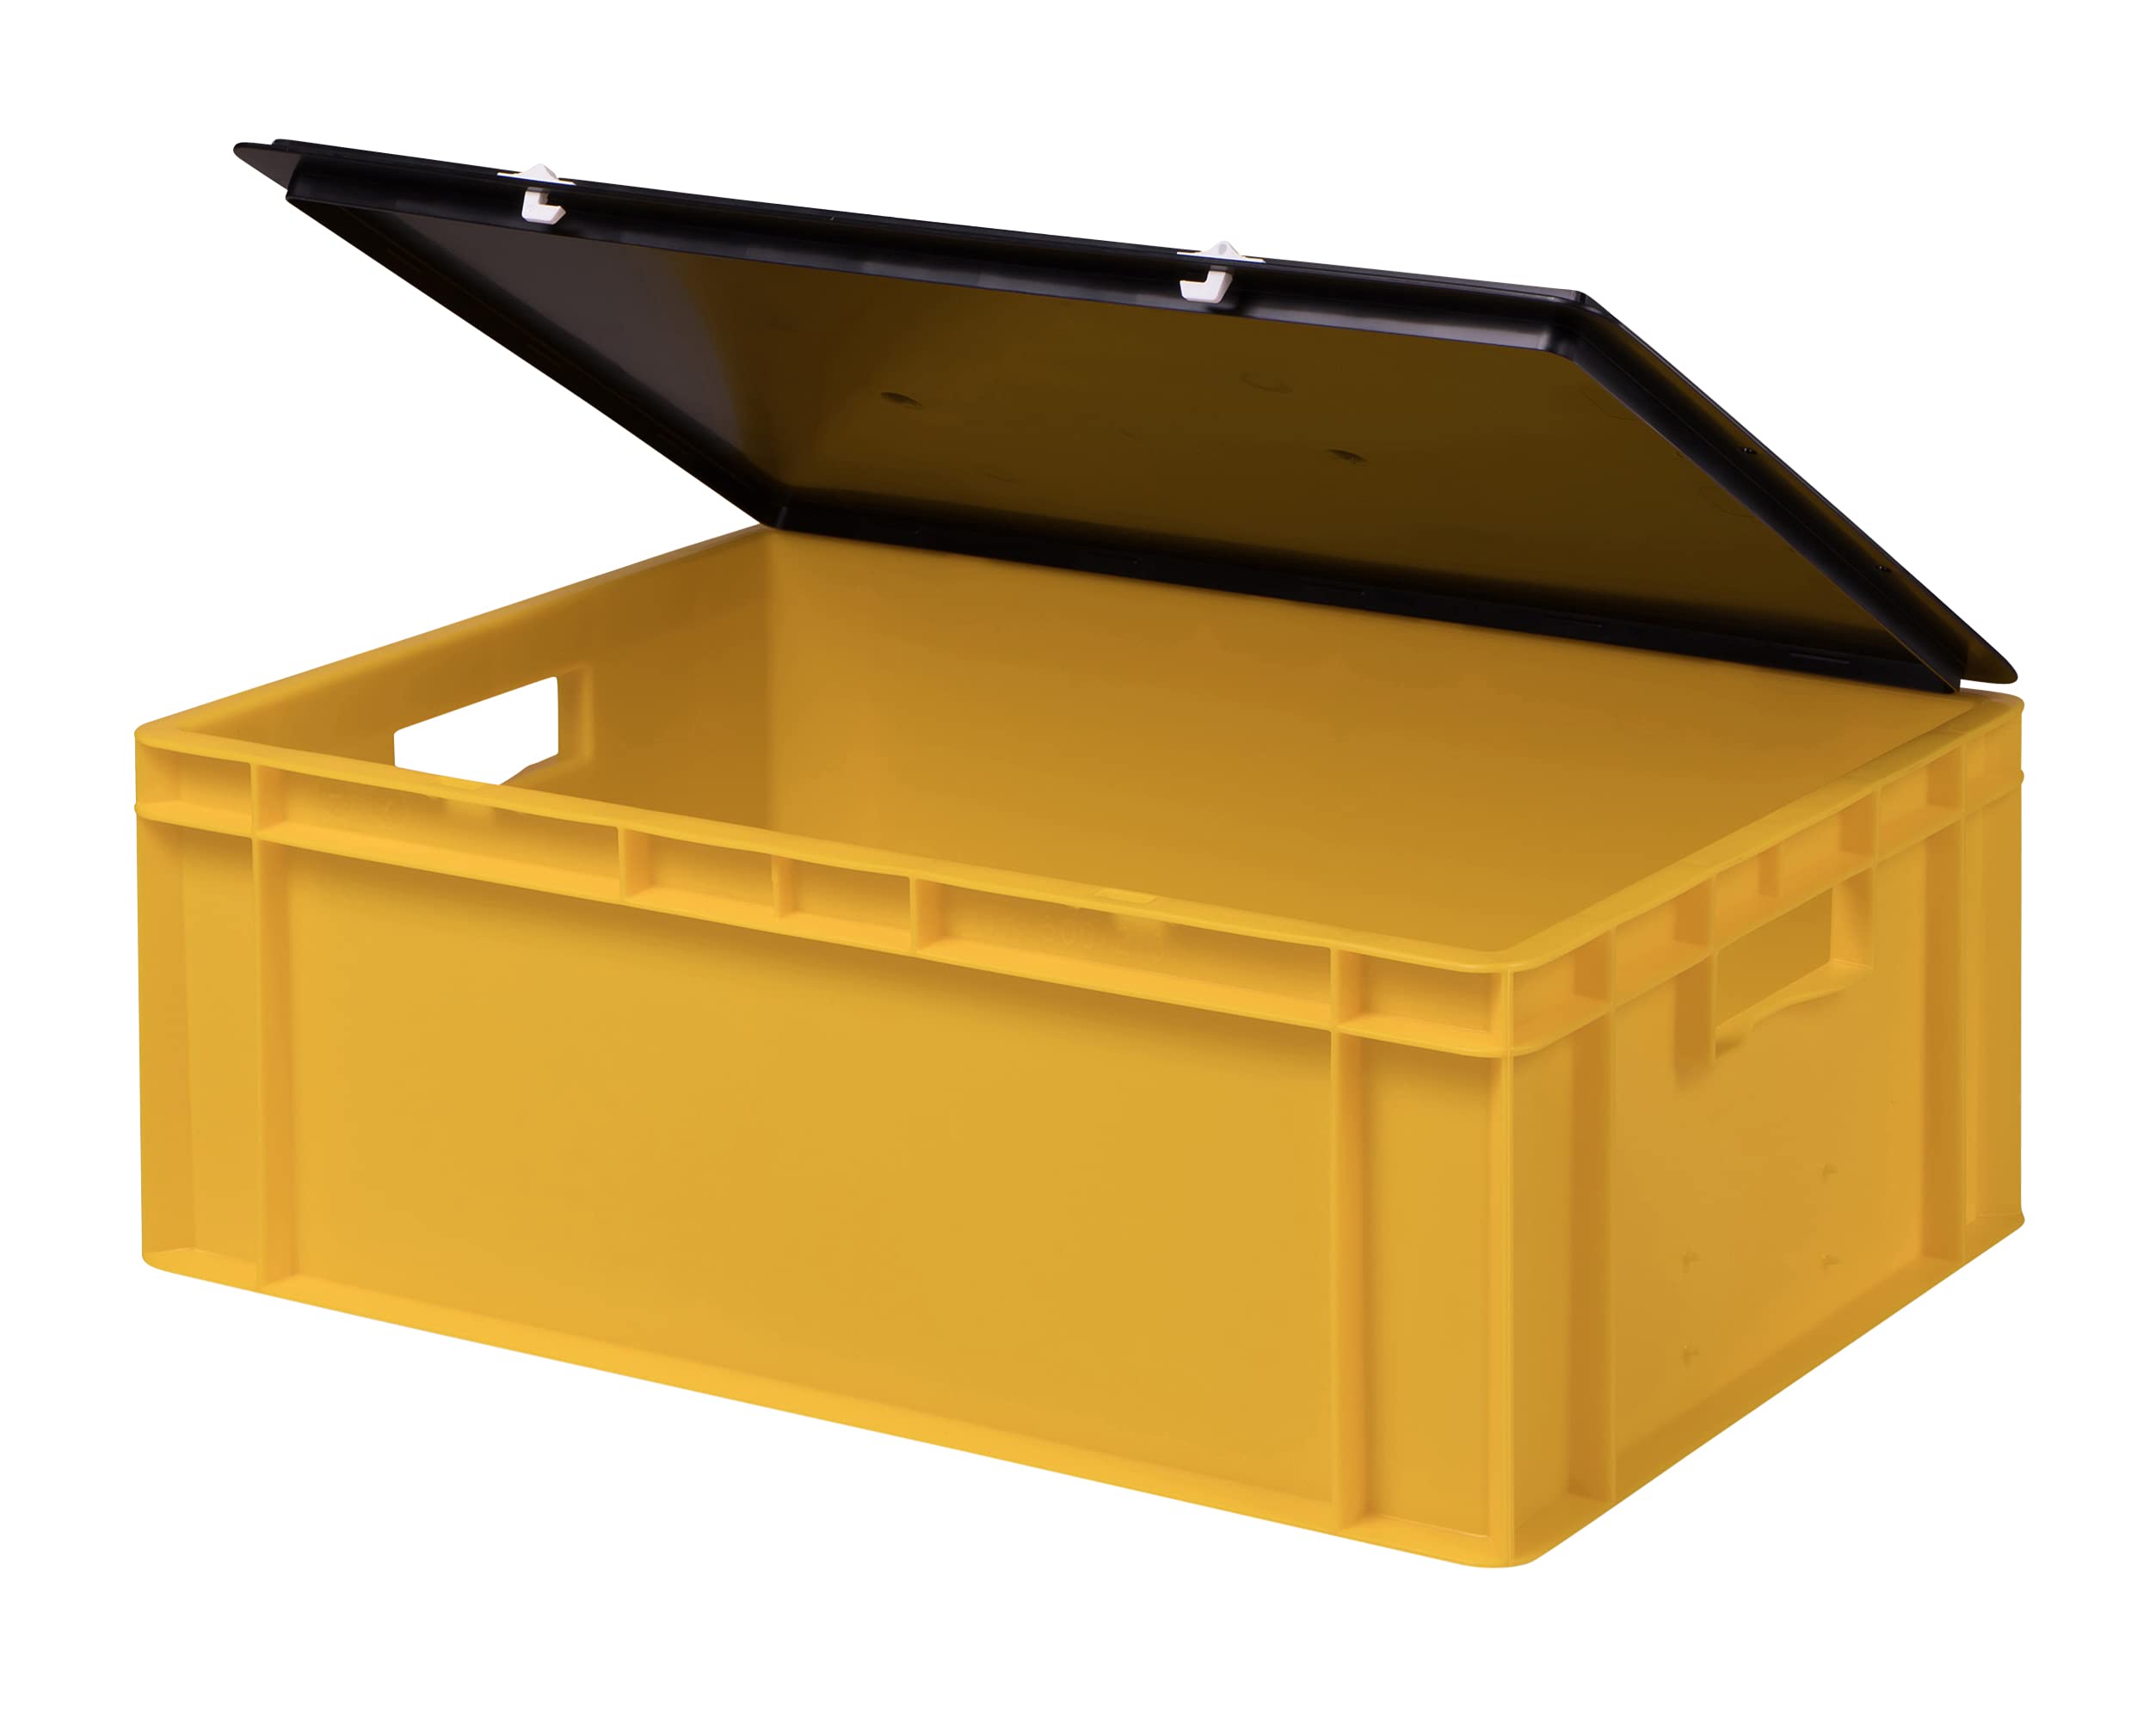 1a-TopStore Stabile Profi Aufbewahrungsbox Stapelbox Eurobox Stapelkiste mit Deckel, Kunststoffkiste lieferbar in 5 Farben und 21 Größen für Industrie, Gewerbe, Haushalt (gelb, 60x40x22 cm)